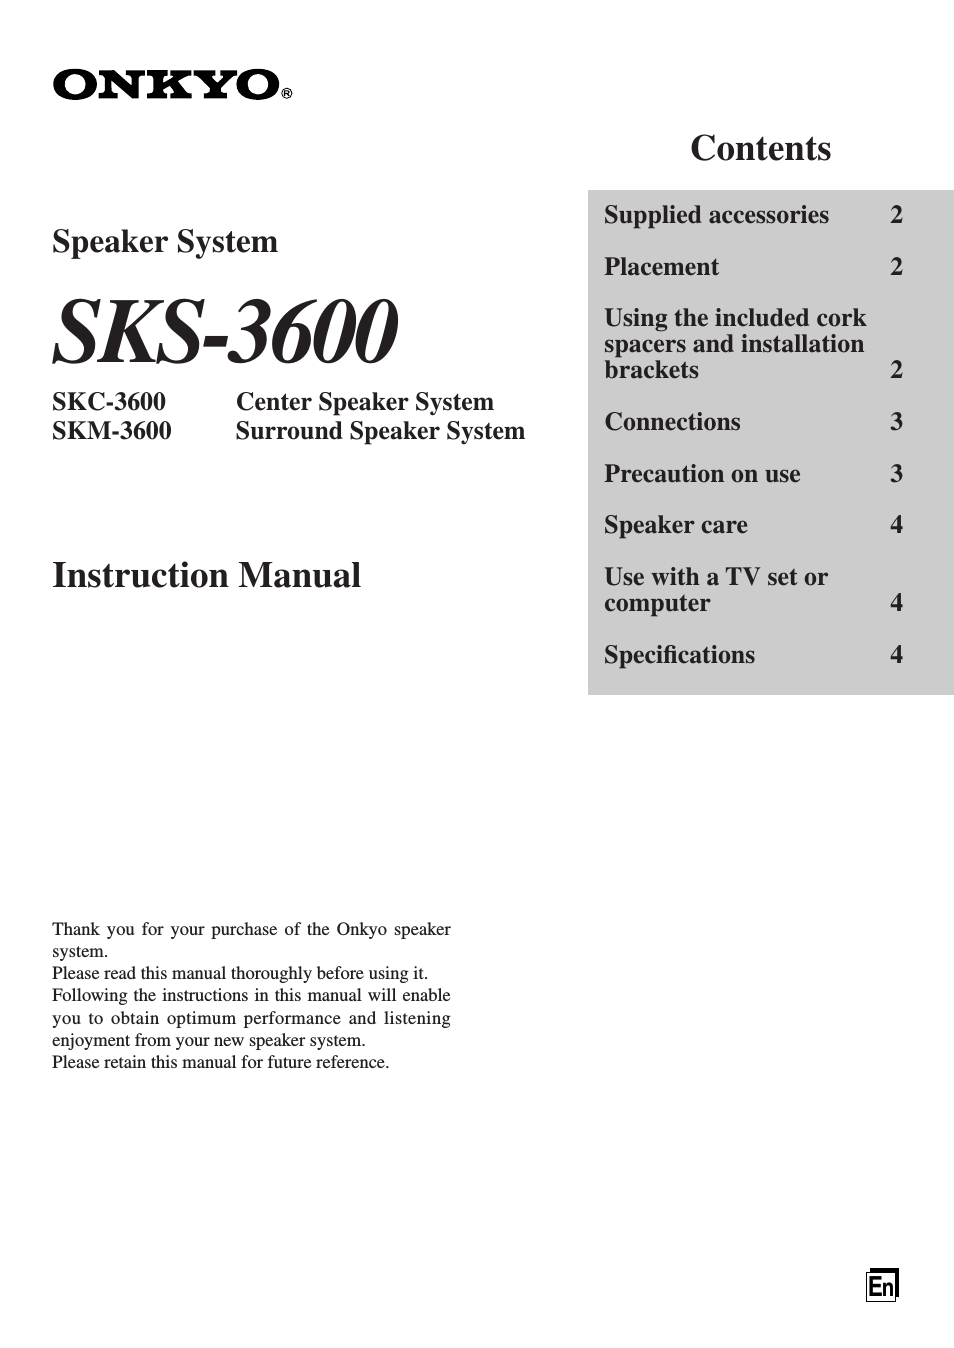 SKS-3600